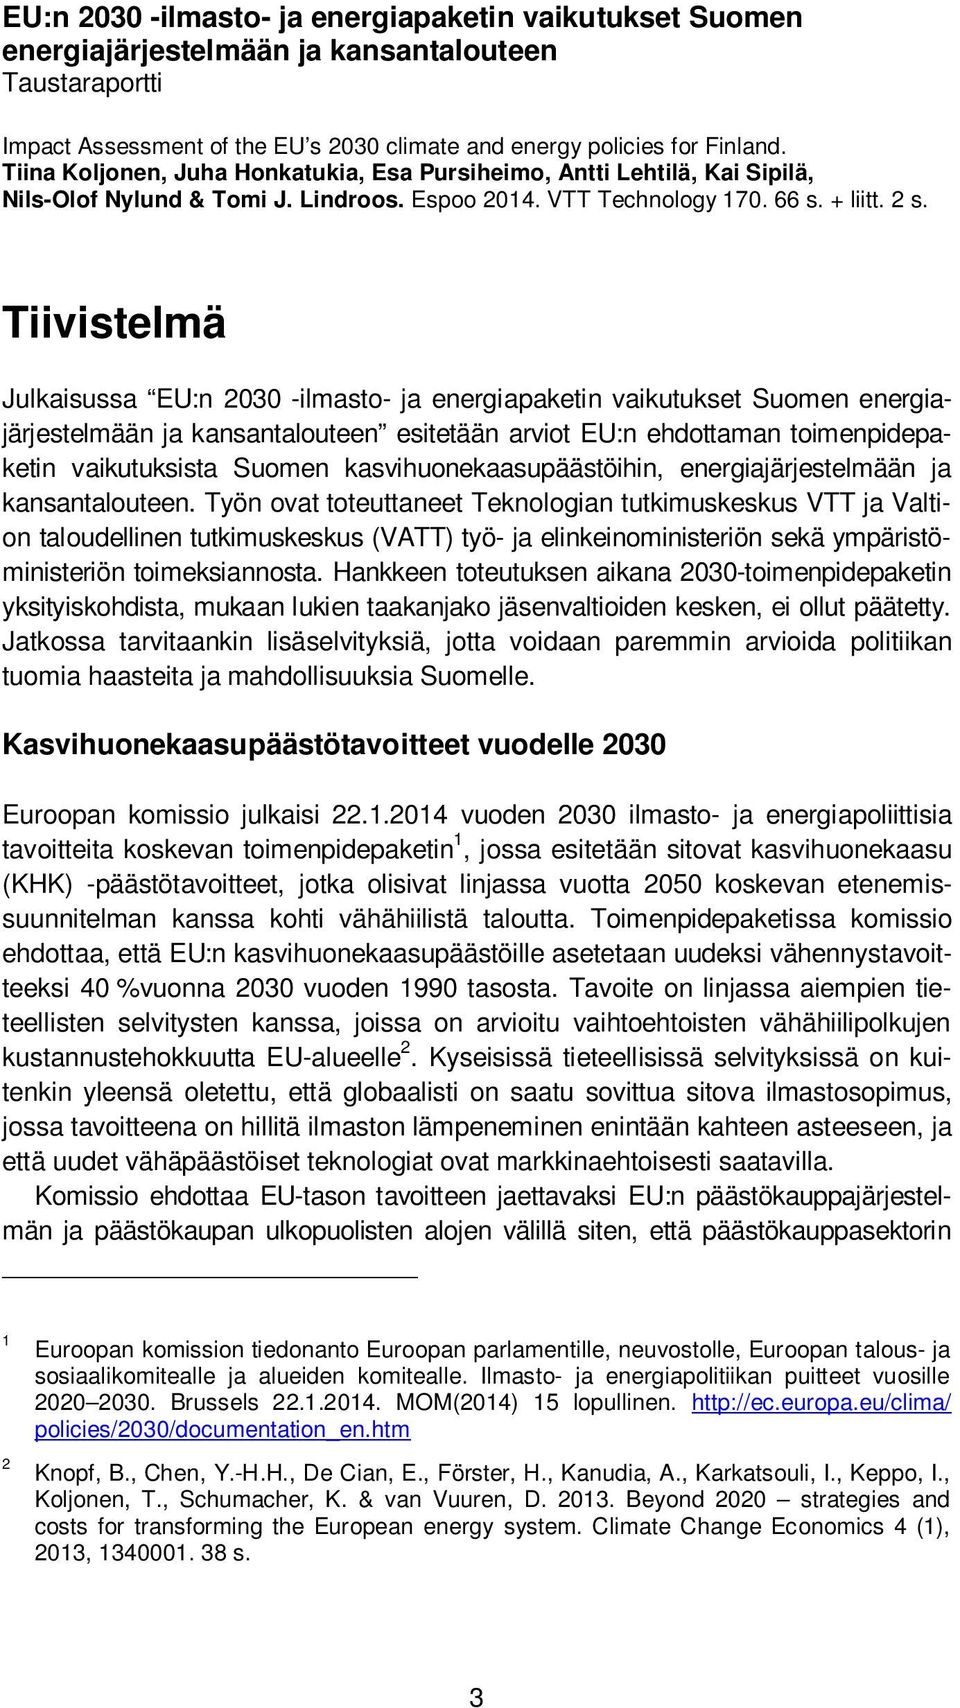 Tiivistelmä Julkaisussa EU:n 2030 -ilmasto- ja energiapaketin vaikutukset Suomen energiajärjestelmään ja kansantalouteen esitetään arviot EU:n ehdottaman toimenpidepaketin vaikutuksista Suomen